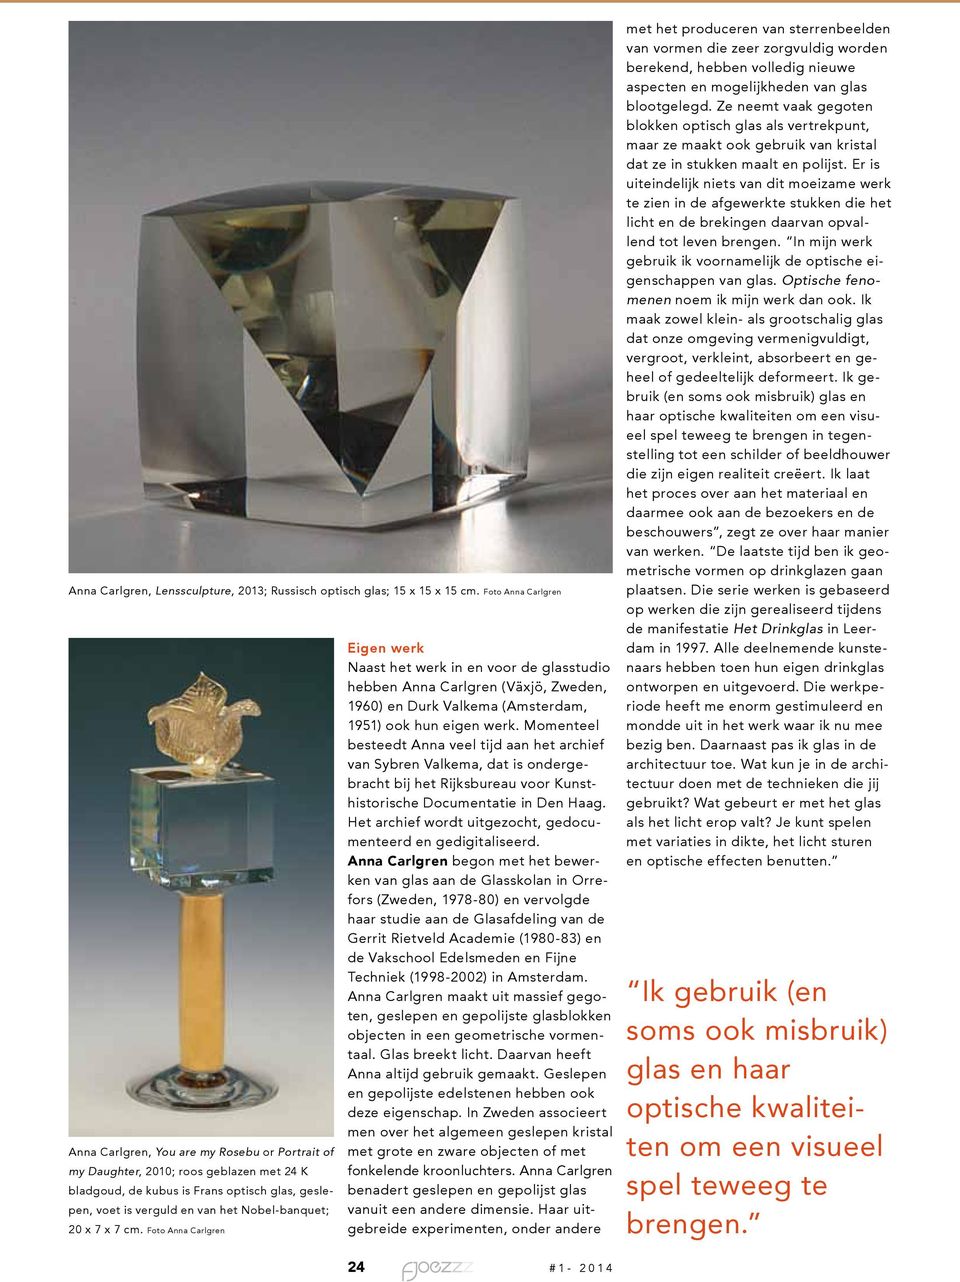 Nobel-banquet; 20 x 7 x 7 cm. Foto Anna Carlgren Eigen werk Naast het werk in en voor de glasstudio hebben Anna Carlgren (Växjö, Zweden, 1960) en Durk Valkema (Amsterdam, 1951) ook hun eigen werk.